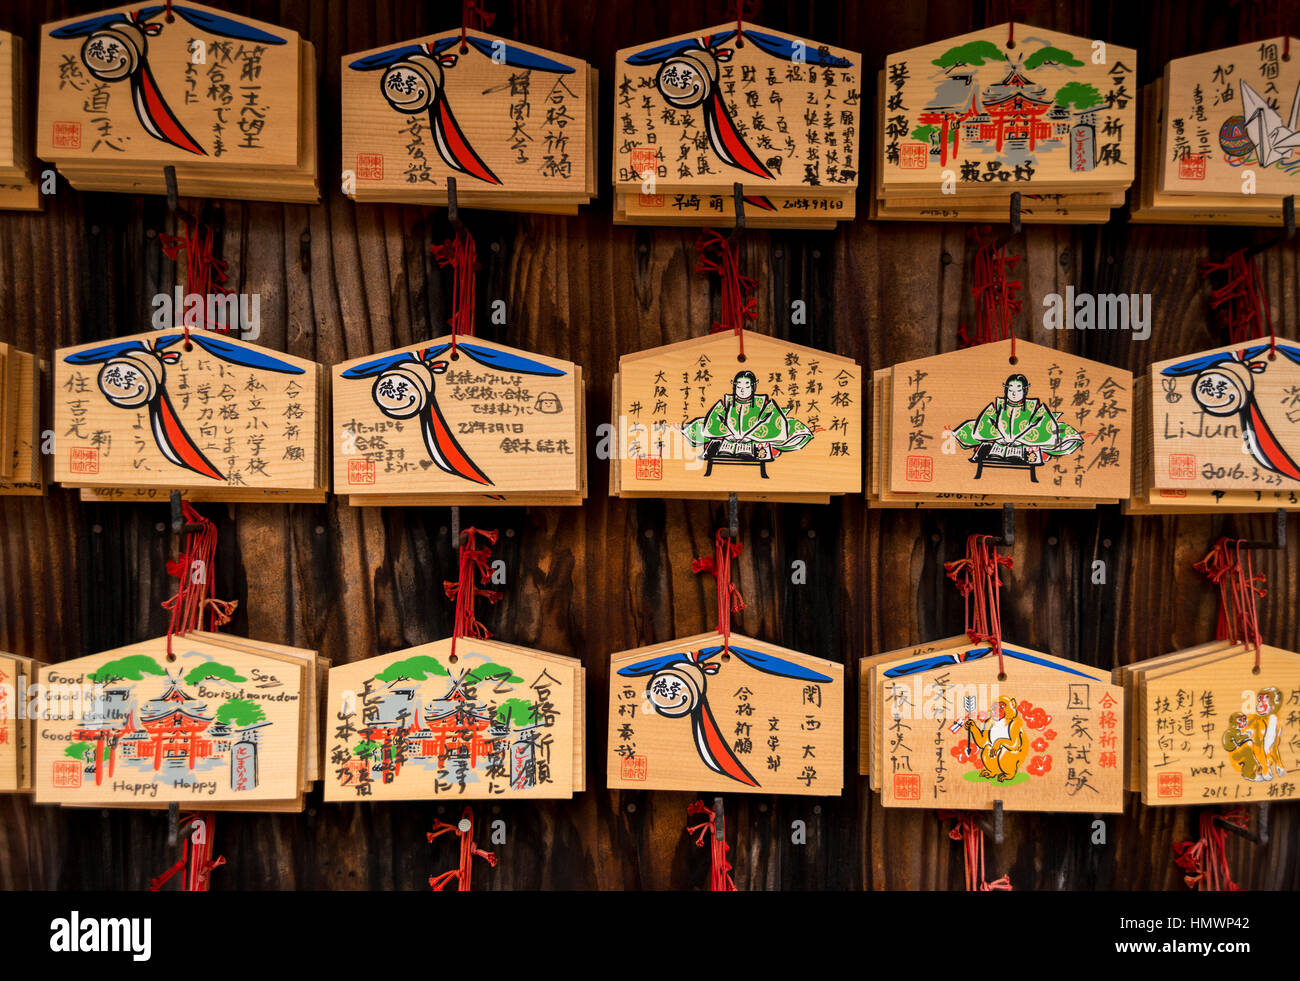 Small wooden plaques with prayers and wishes at Fushimi Inari Taisha (Shinto shrine), Kyoto, Japan Stock Photo